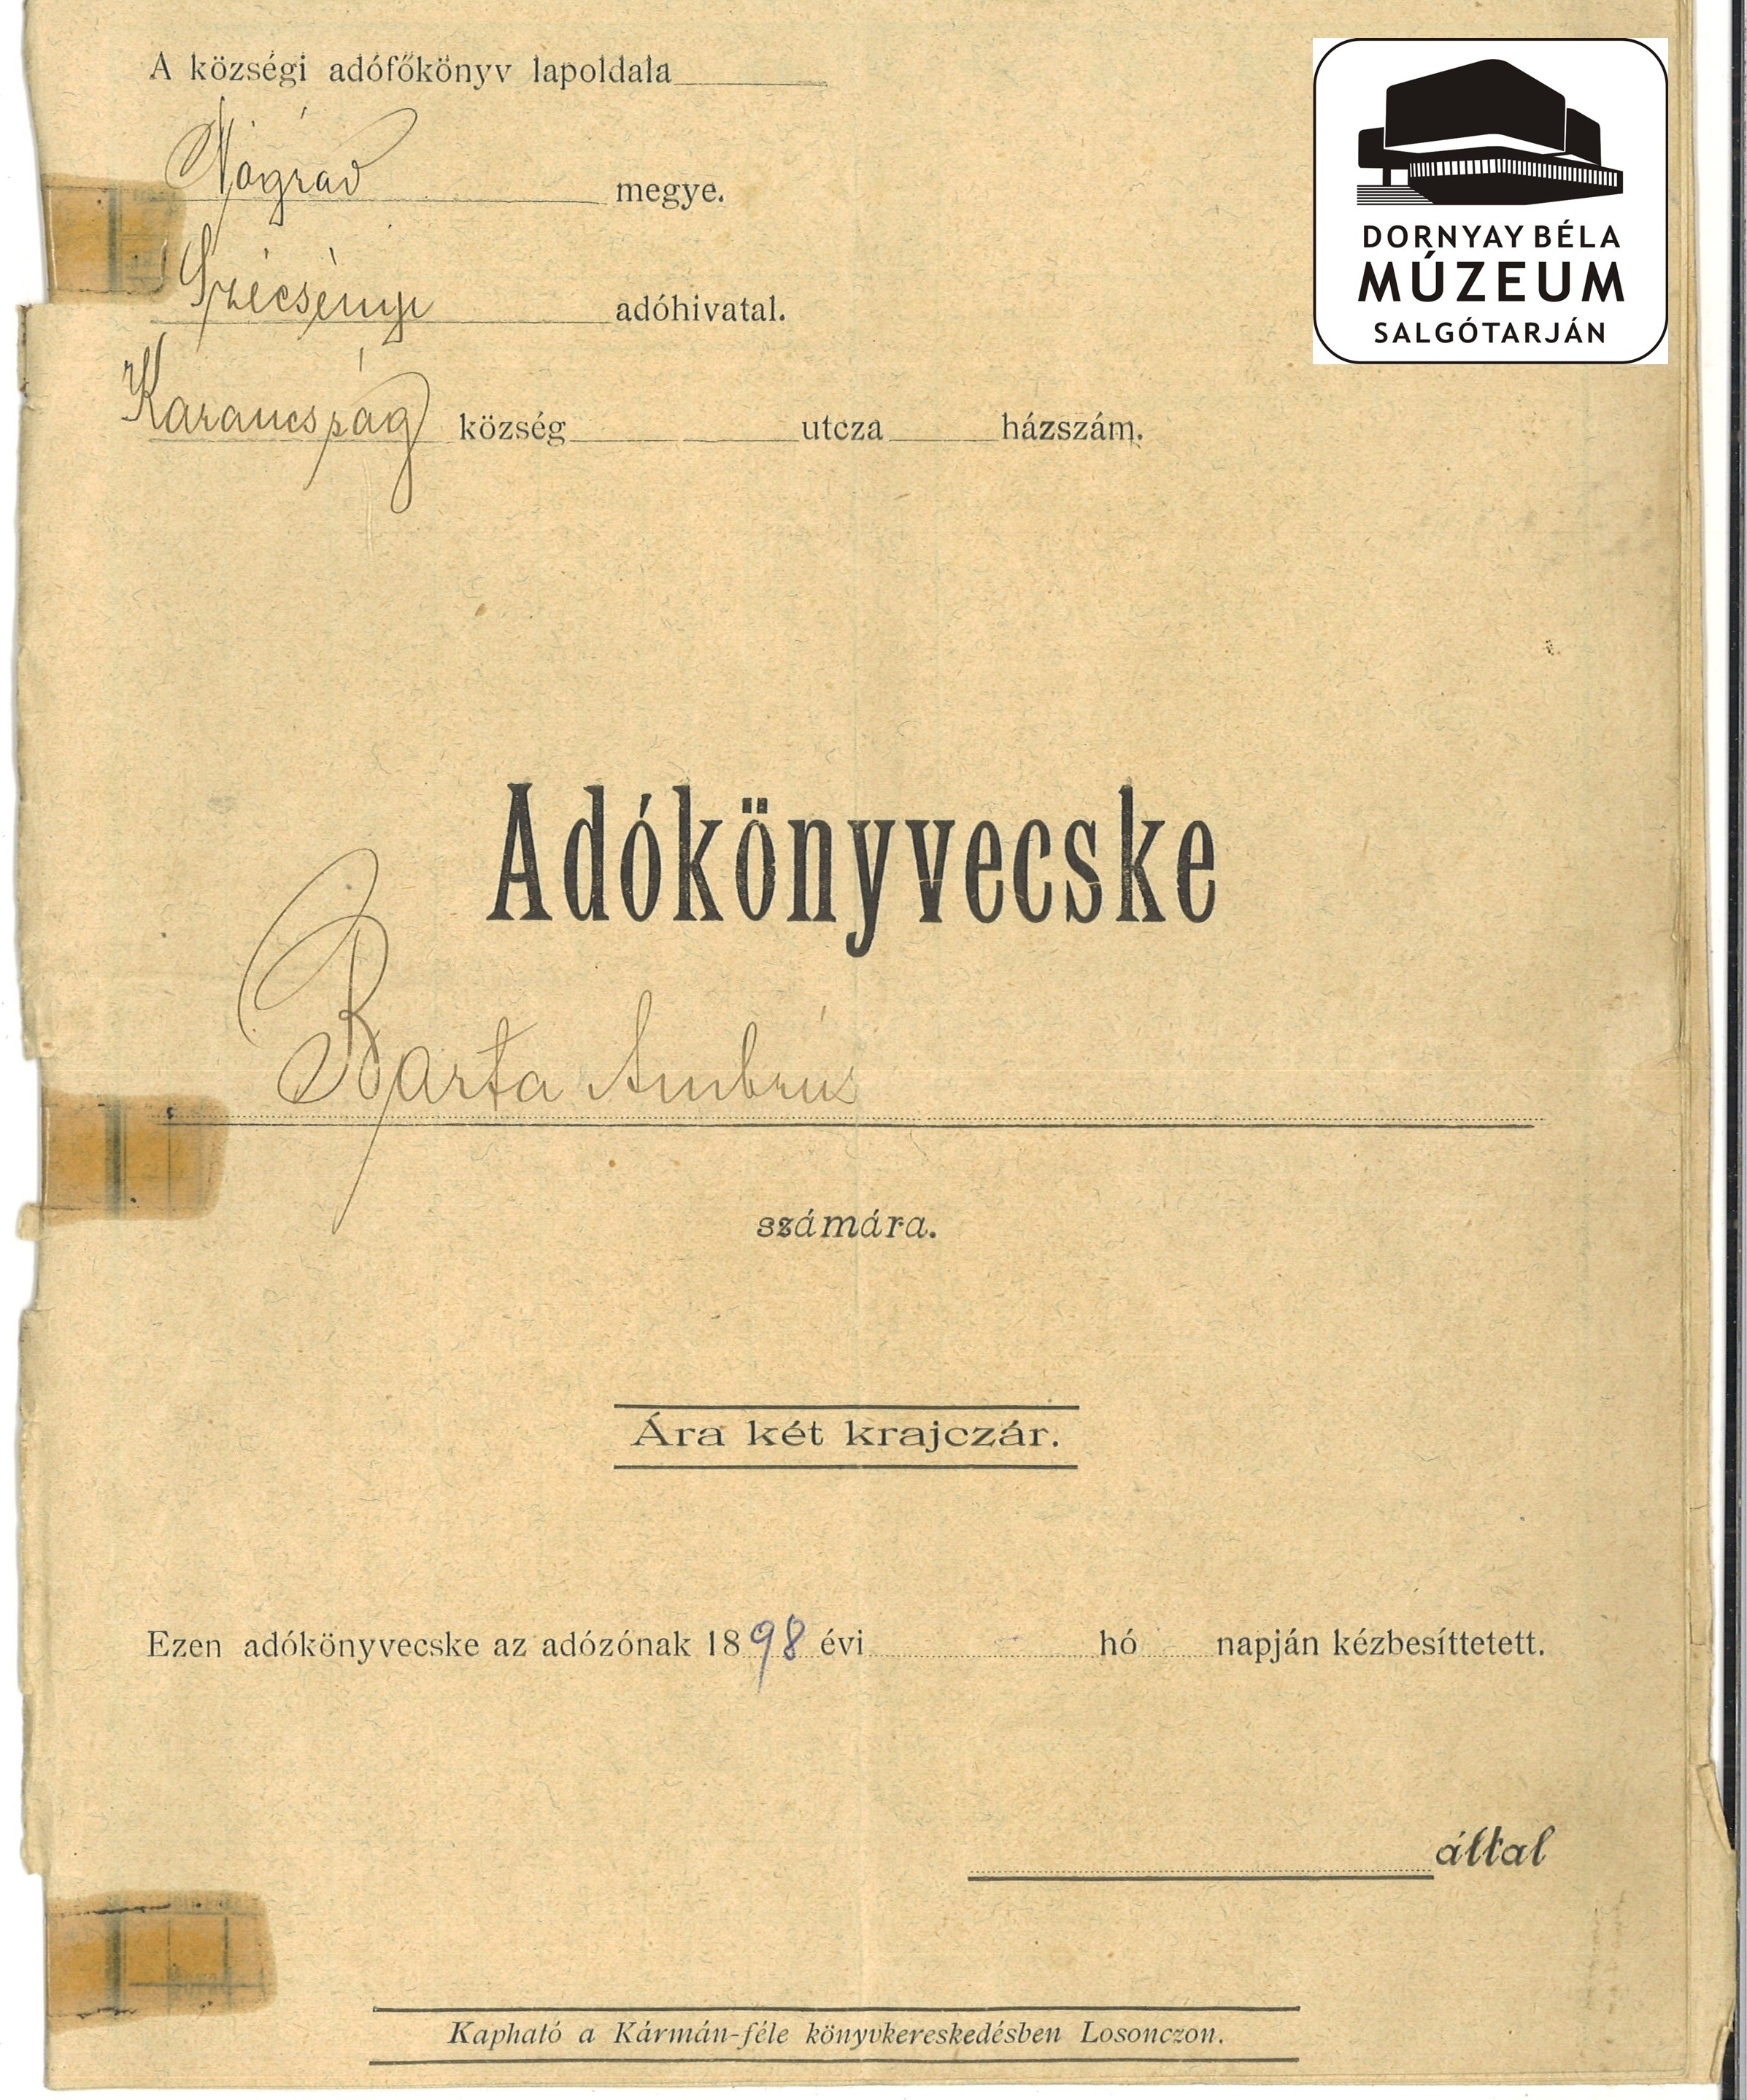 Barta Ambrus adókönyve (Dornyay Béla Múzeum, Salgótarján CC BY-NC-SA)